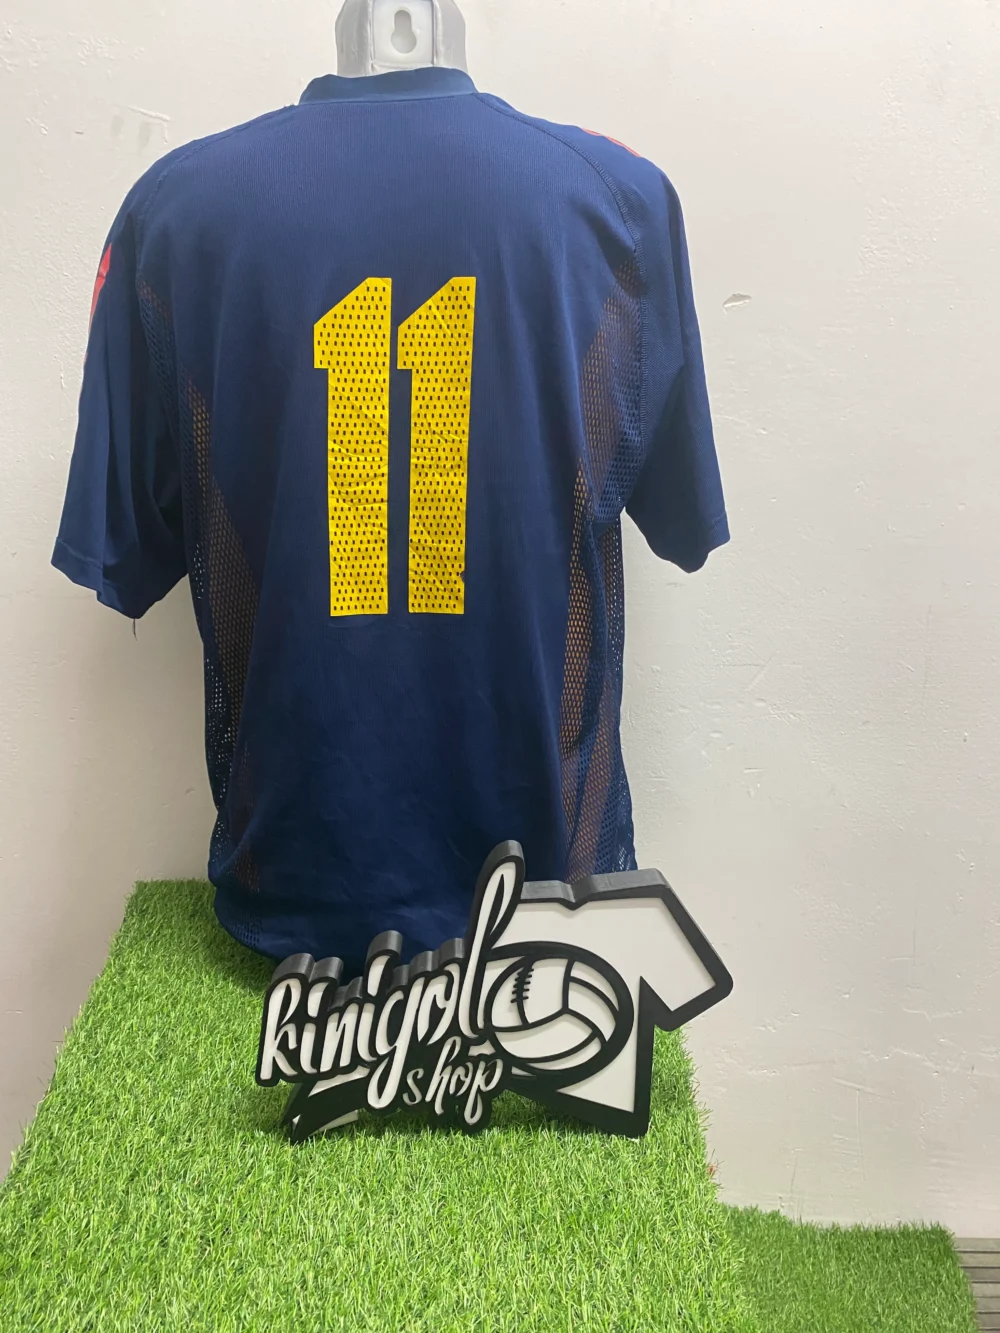 camiseta-seleccion-española-11-kinigolshop-2